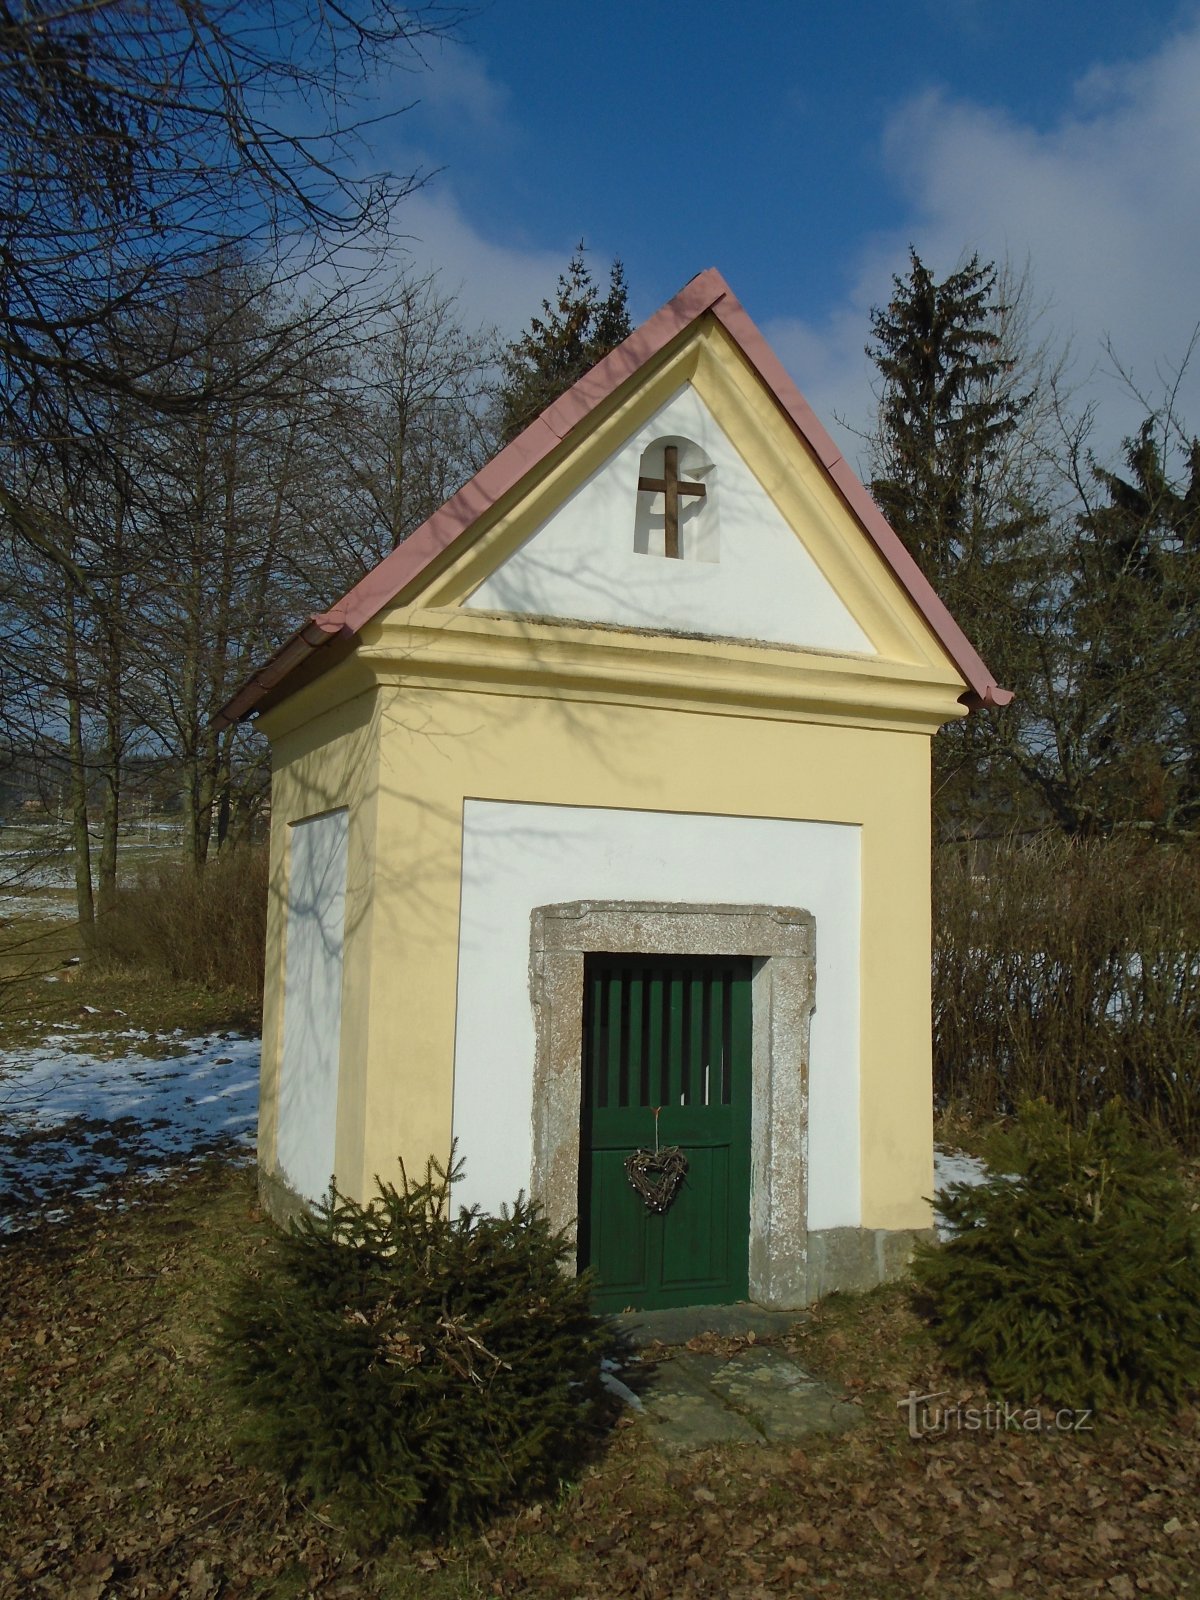 Chapel at No. 51 (Porruby)